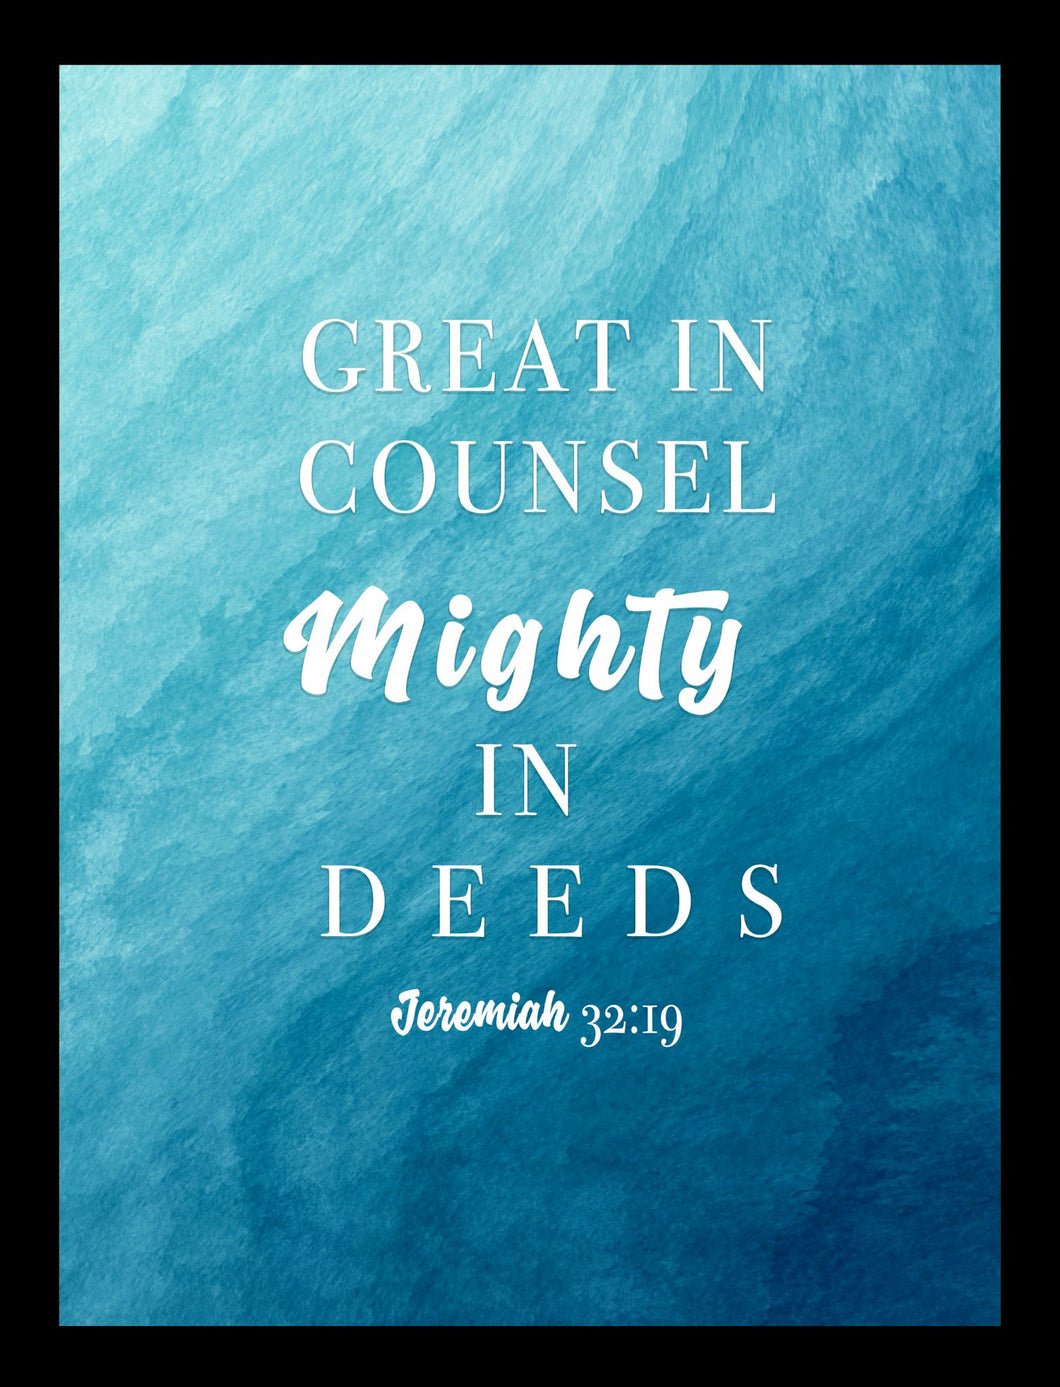 Mighty in deeds